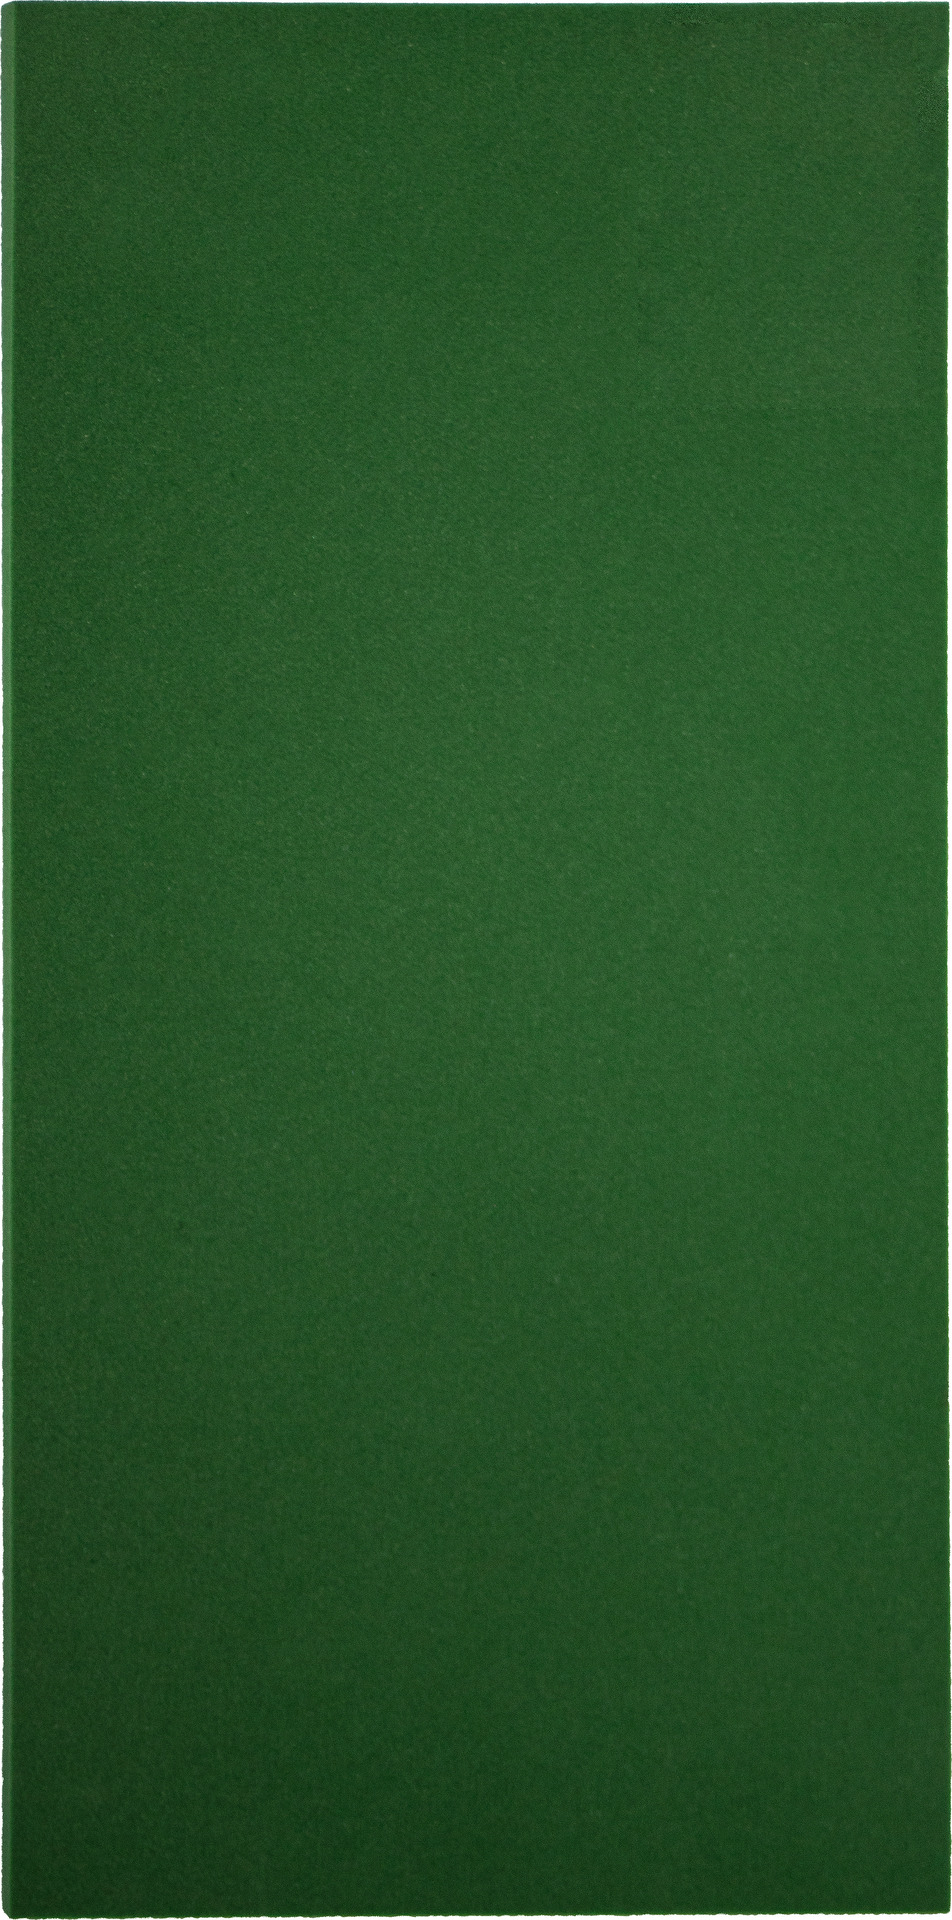 Conmetall Zellgummi grün 280x140x8mm